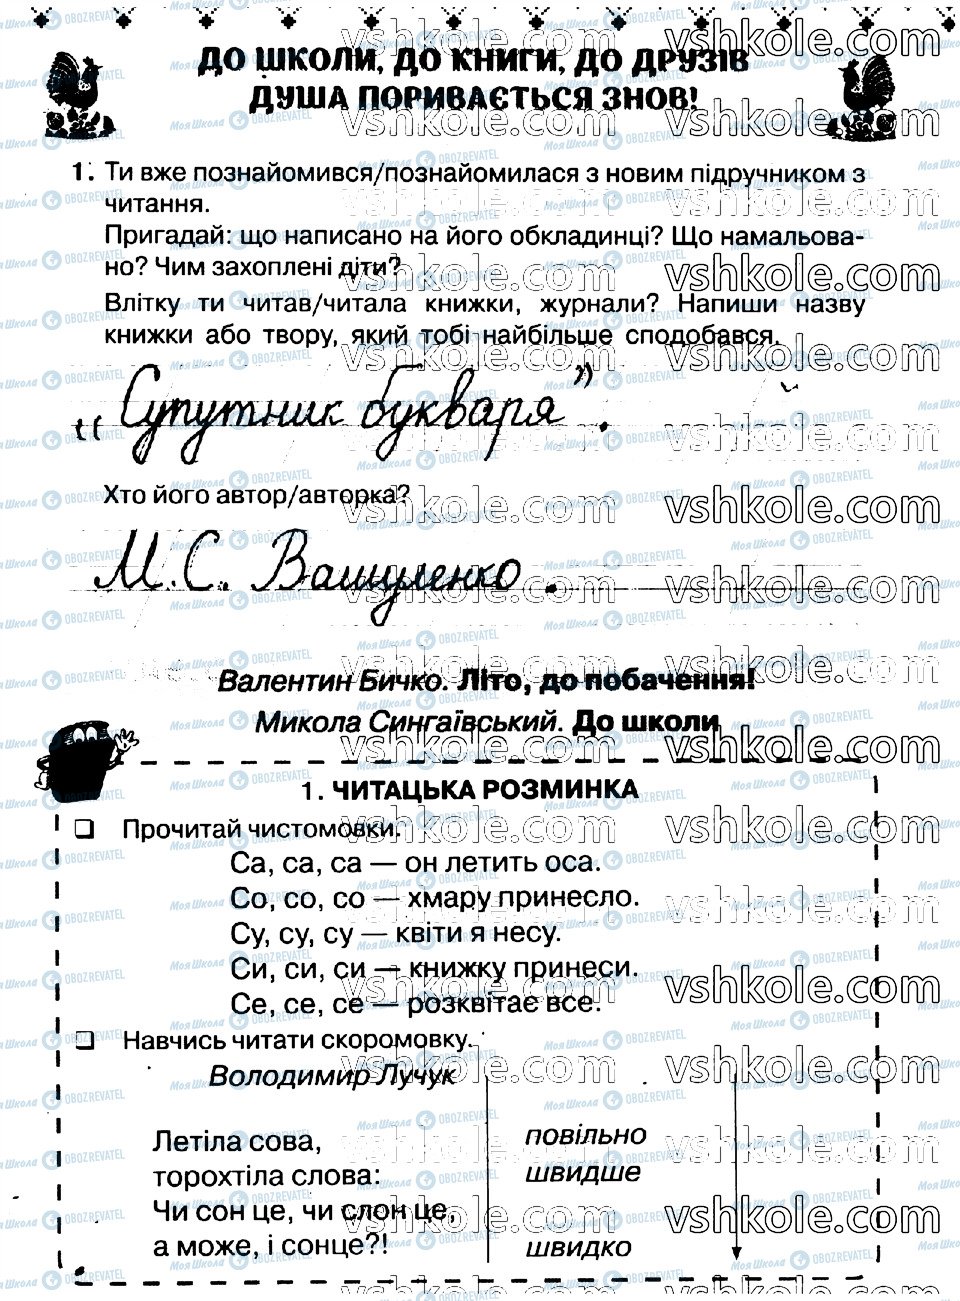 ГДЗ Укр мова 2 класс страница стр1